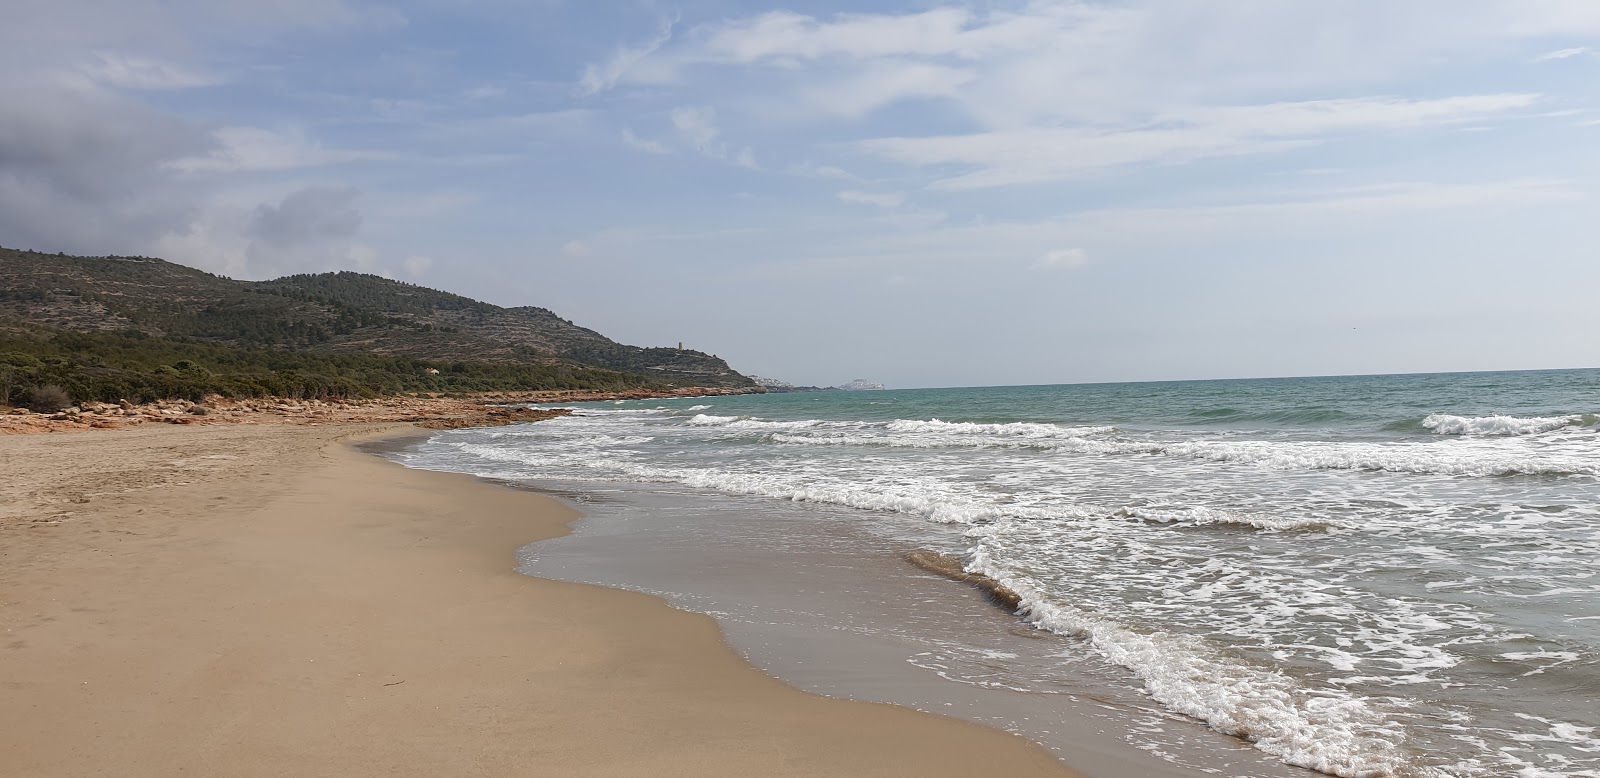 Platja del Russo'in fotoğrafı kahverengi kum yüzey ile